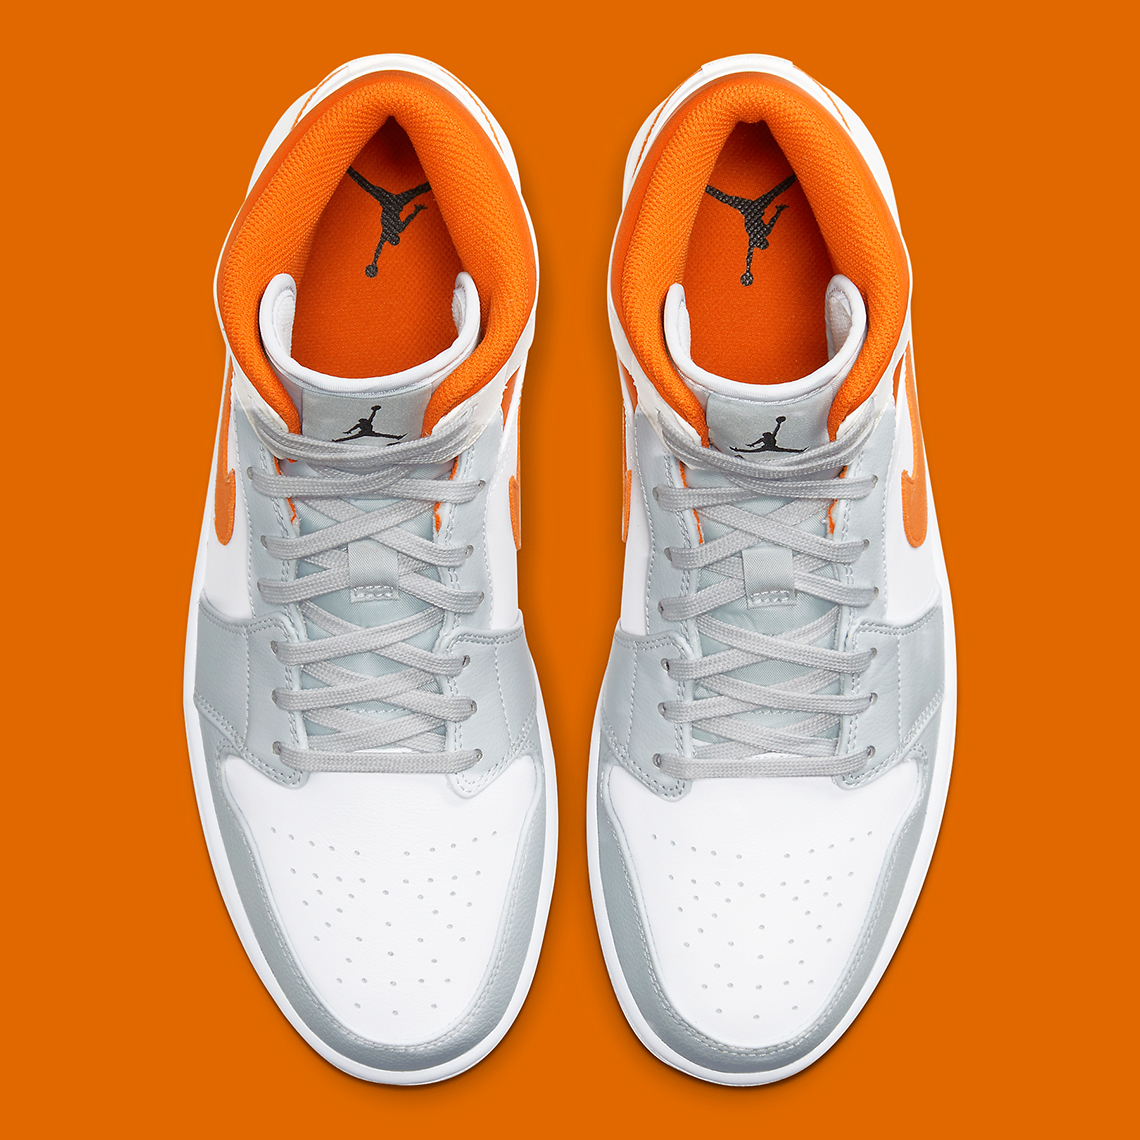 grey and orange jordan 1